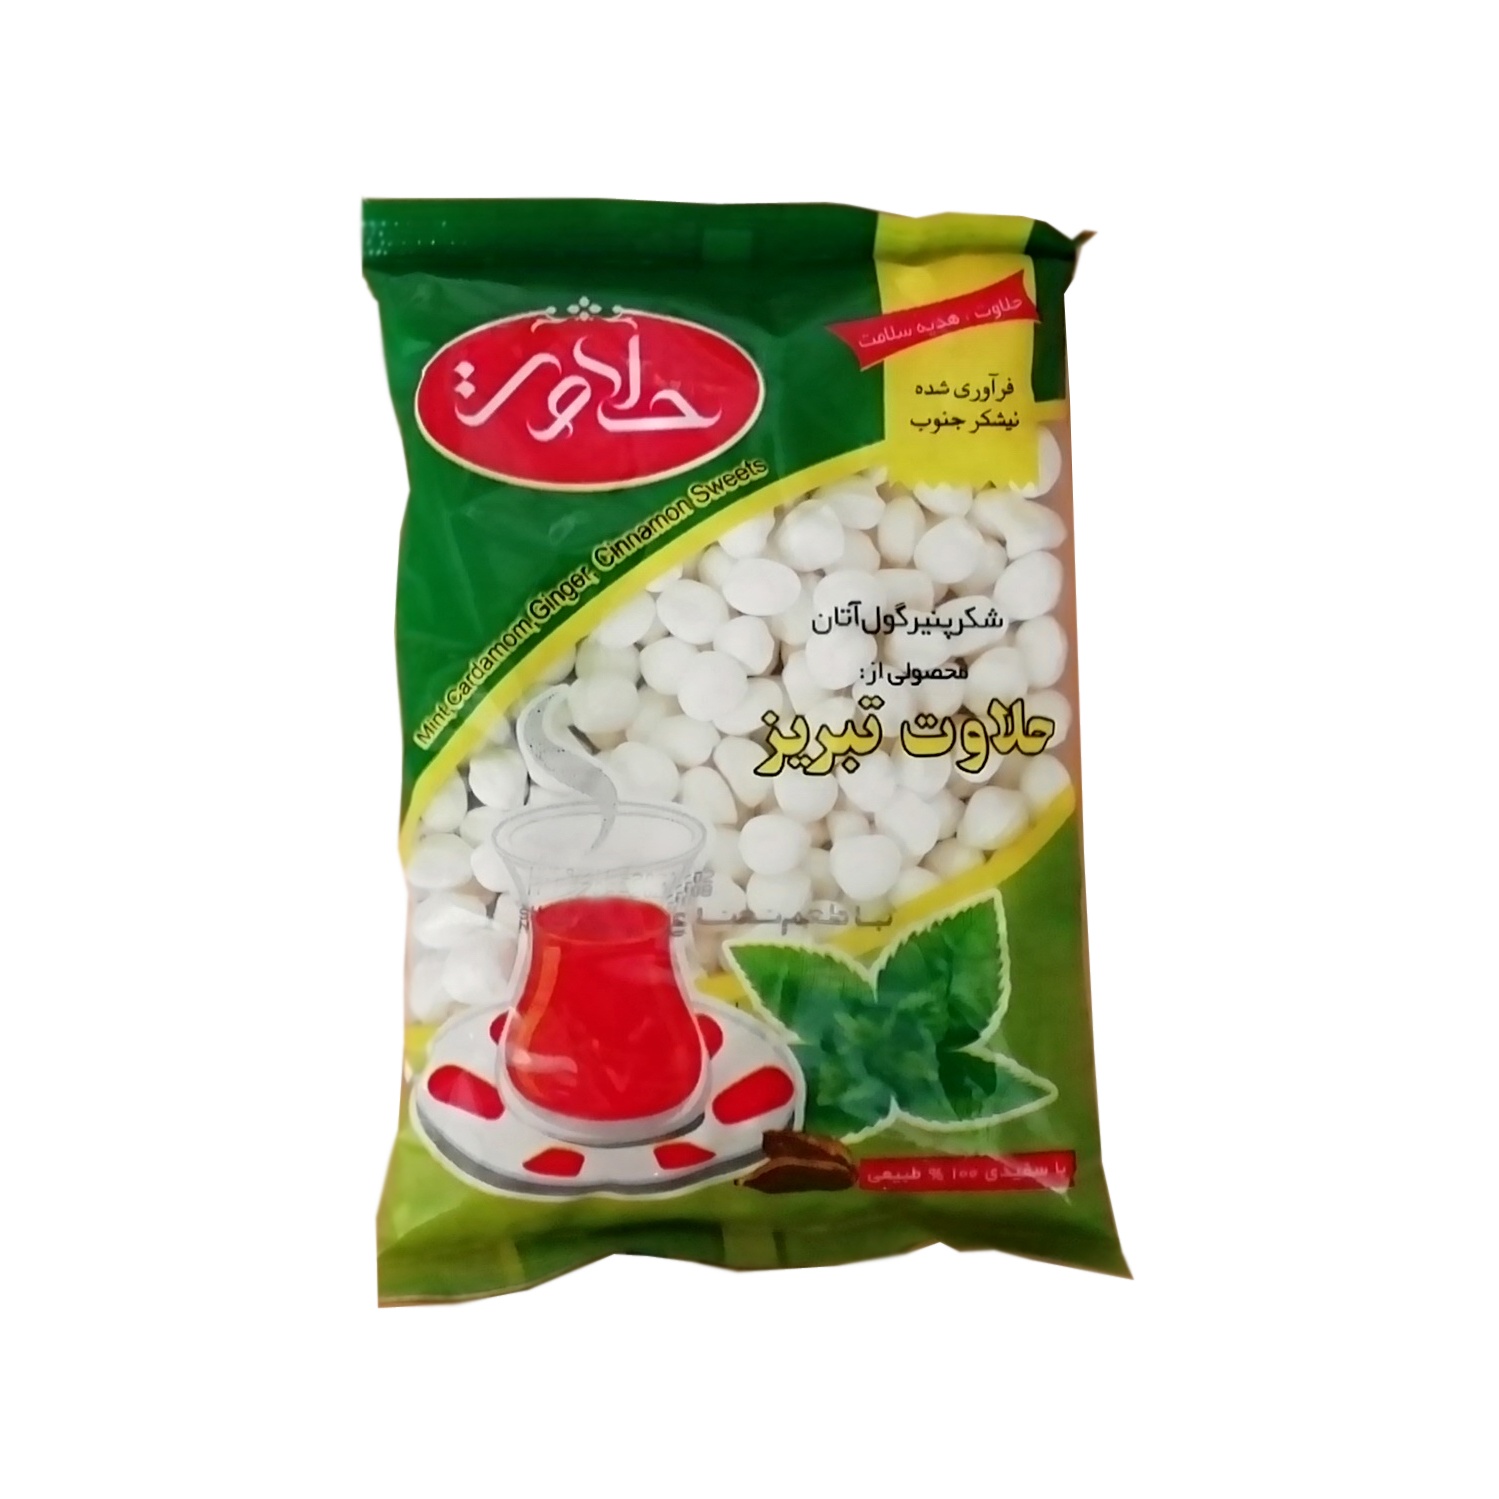 شکر پنیر طبیعی نعنایی حلاوت تبریز - 600 گرم